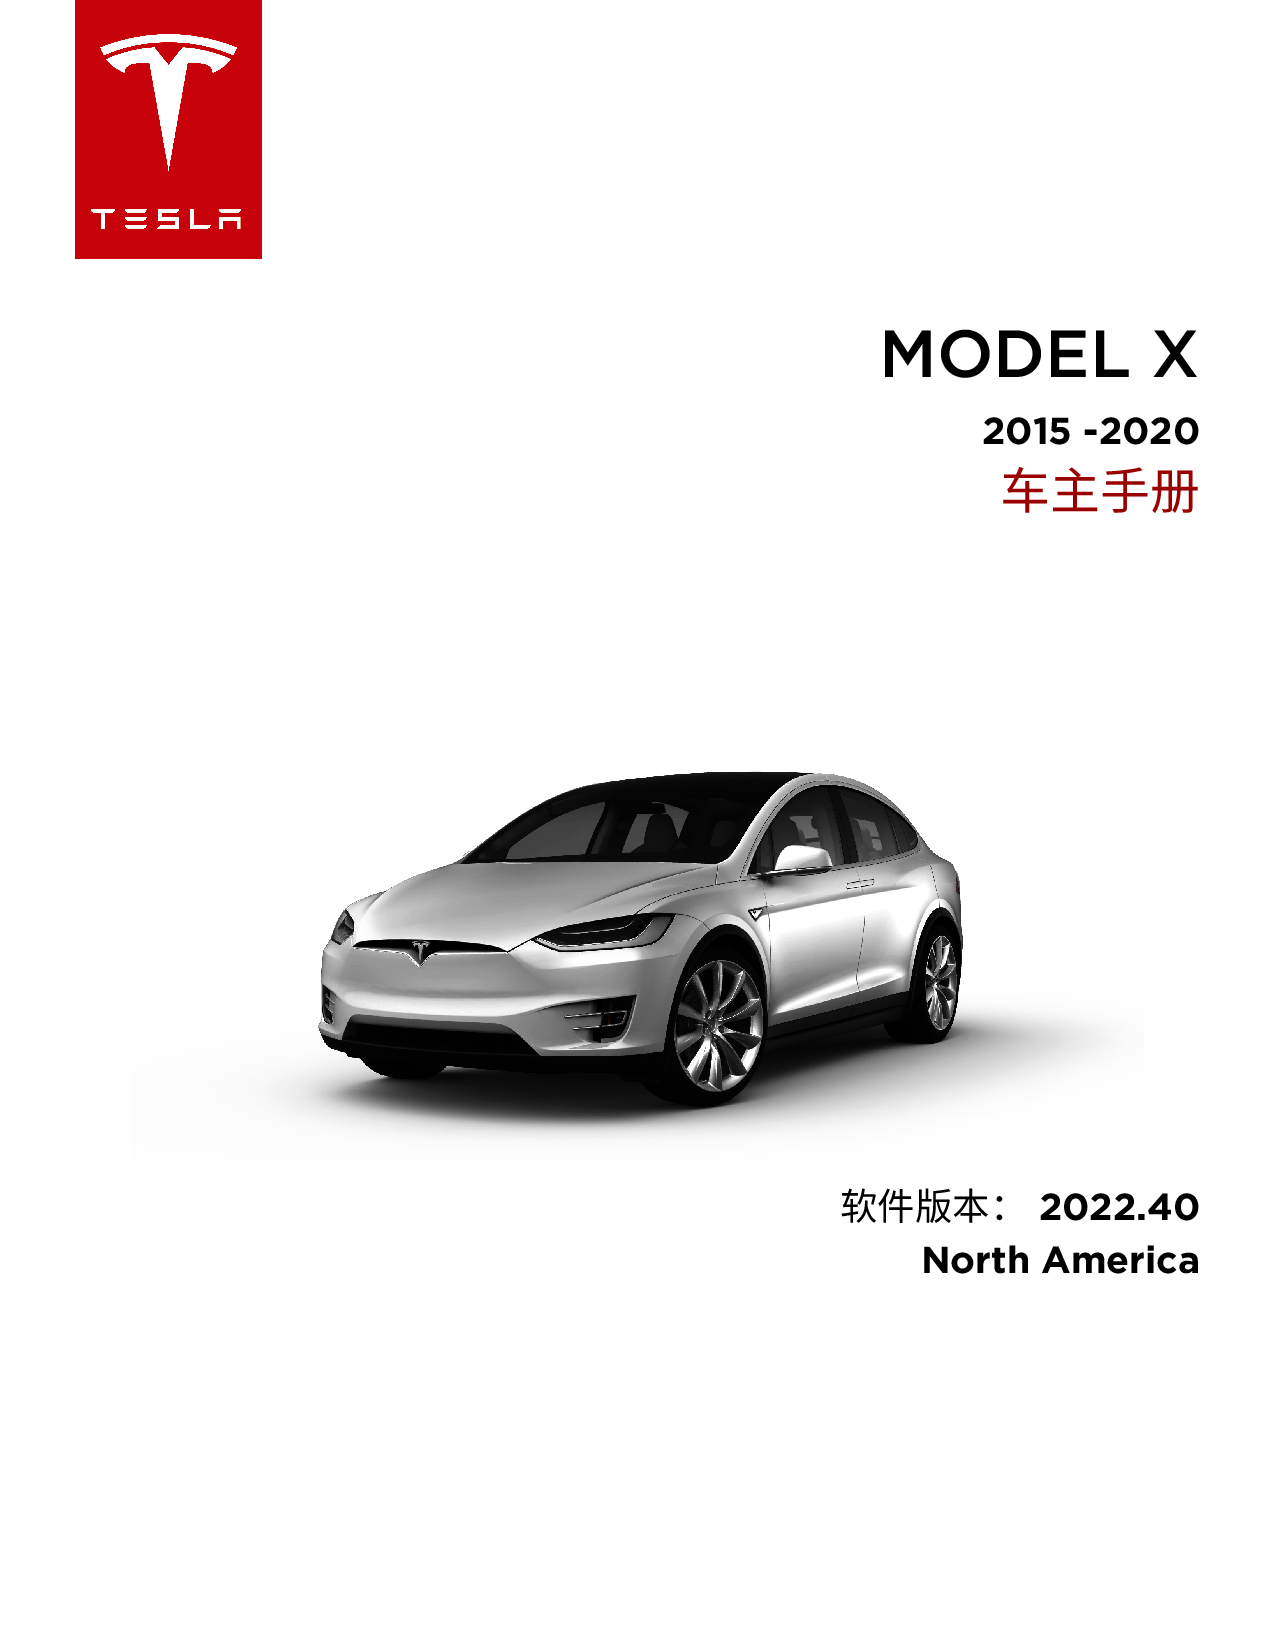 特斯拉 Tesla Model X 2015-2020 北美版 车主手册 封面